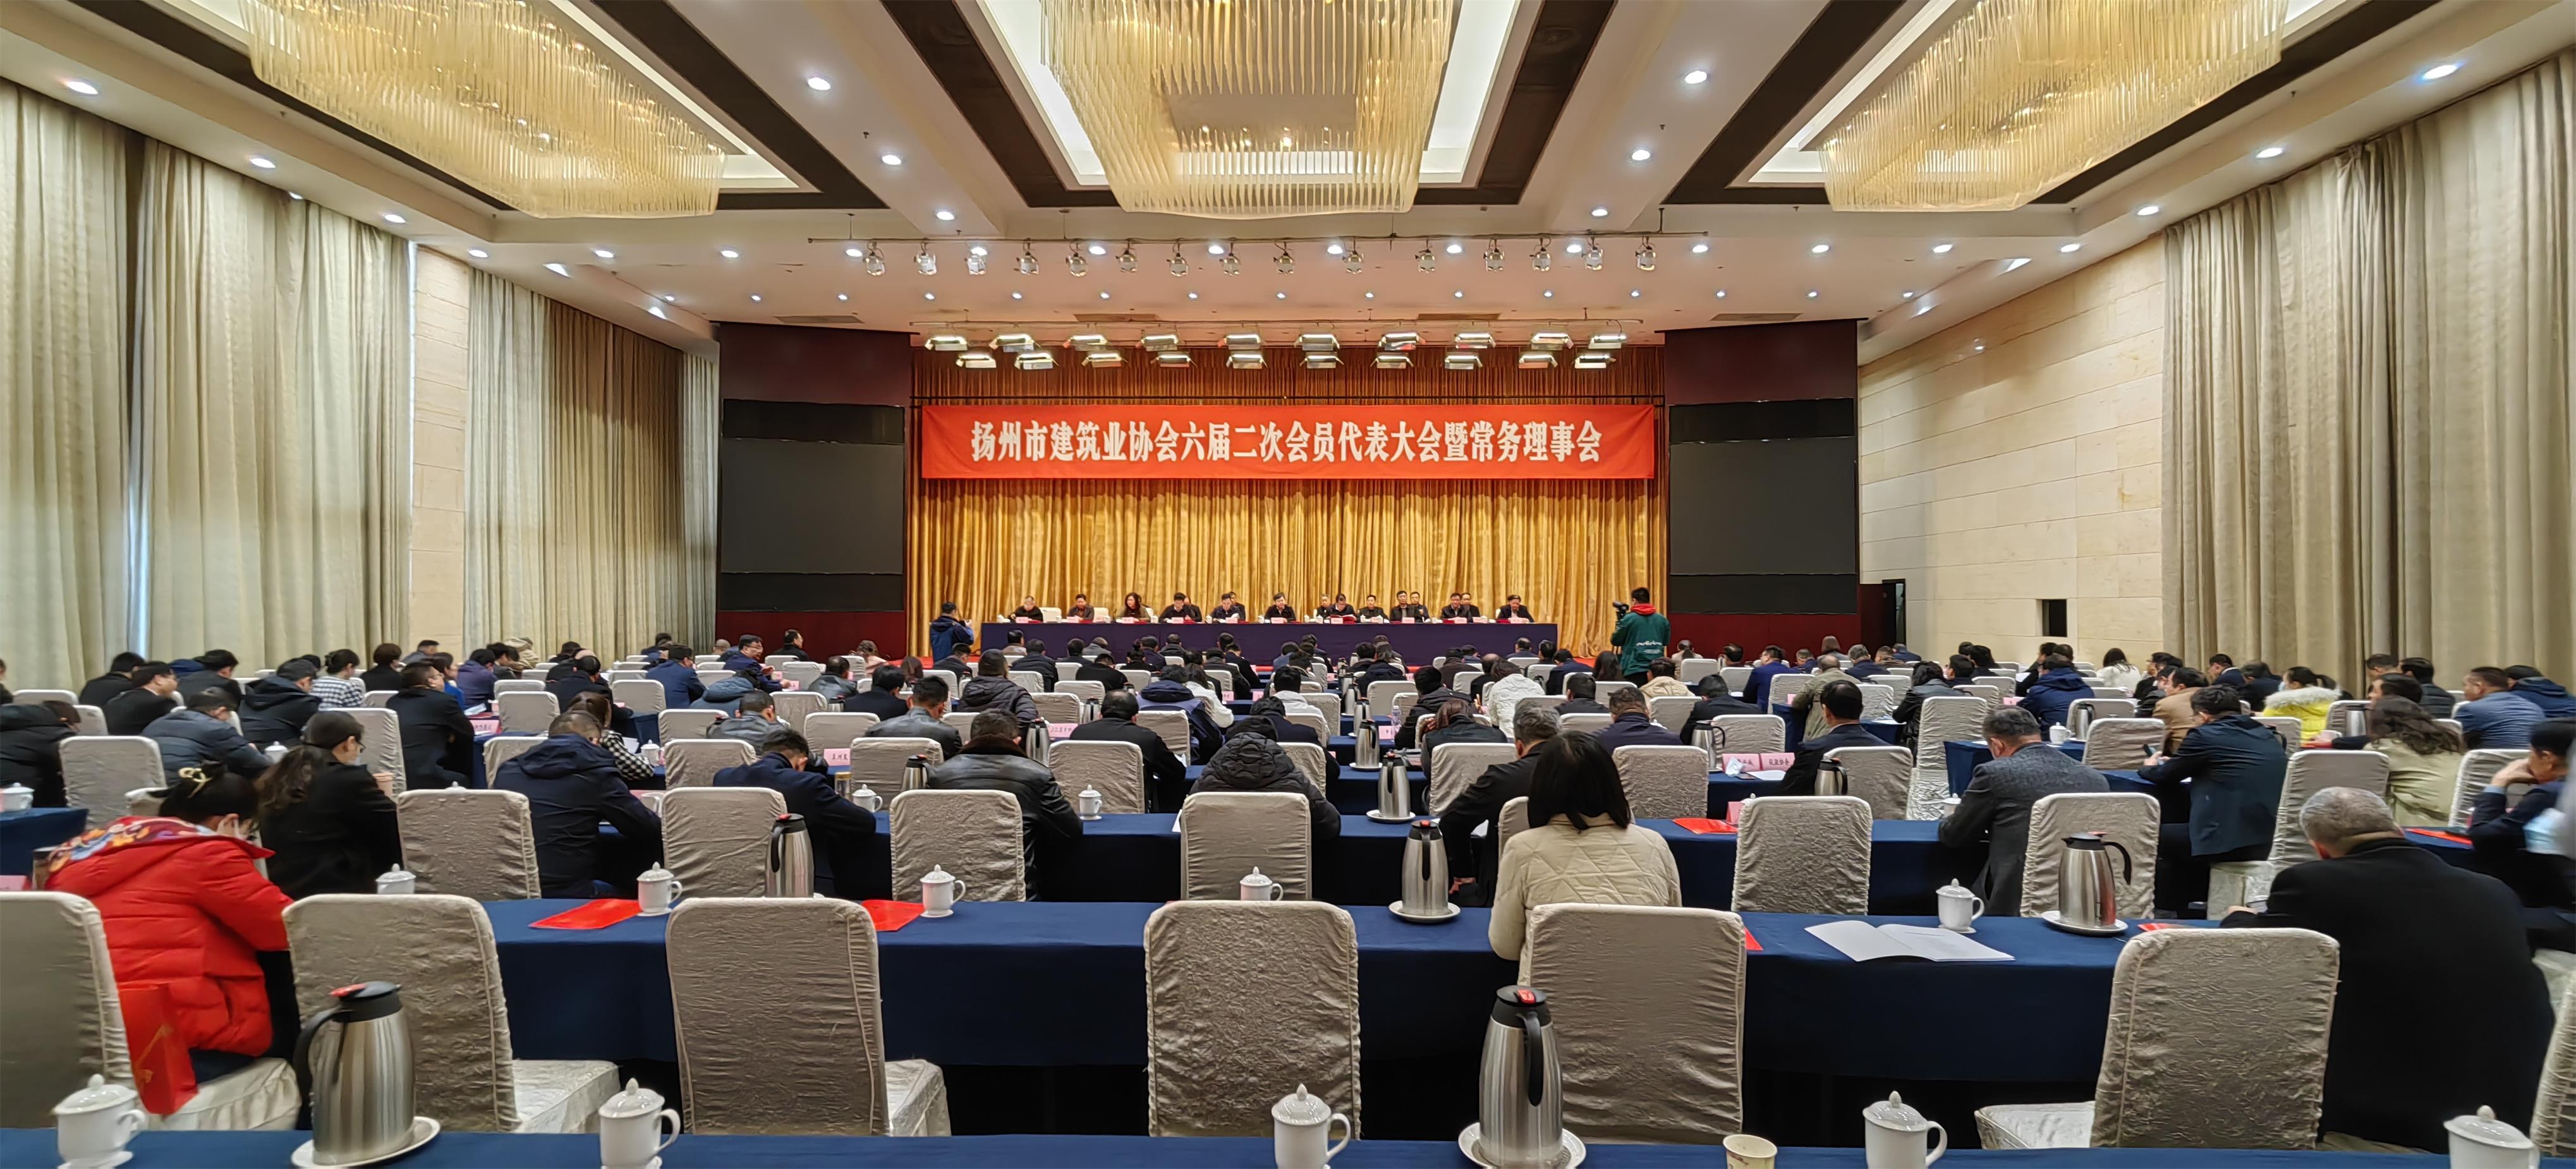 图1-3、扬州市建筑业协会第六届二次会员代表大会暨常务理事会.jpg